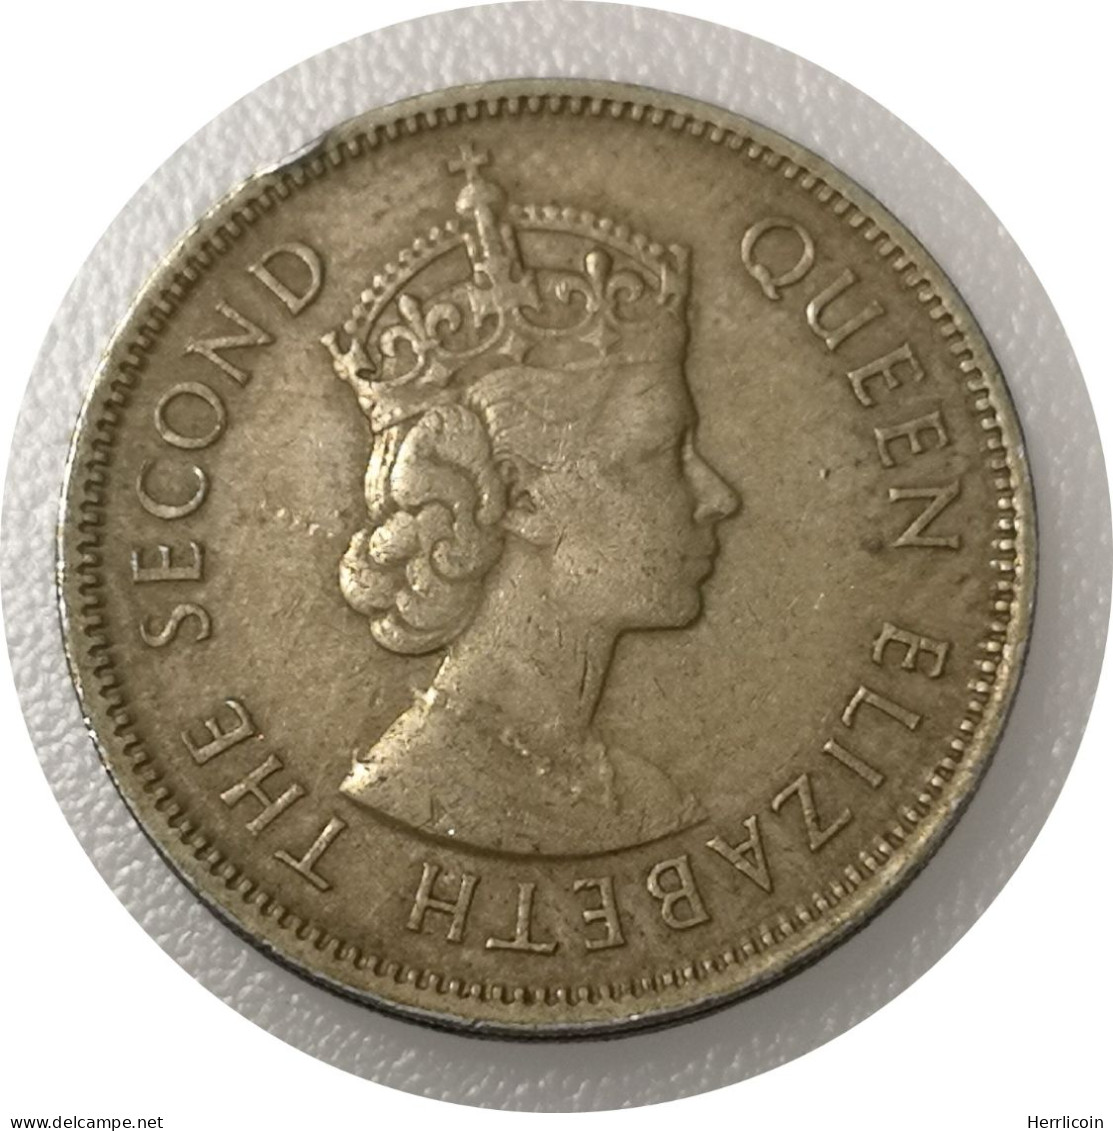 Monnaie Maurice - 1965 - Demi Roupie - Mauritius